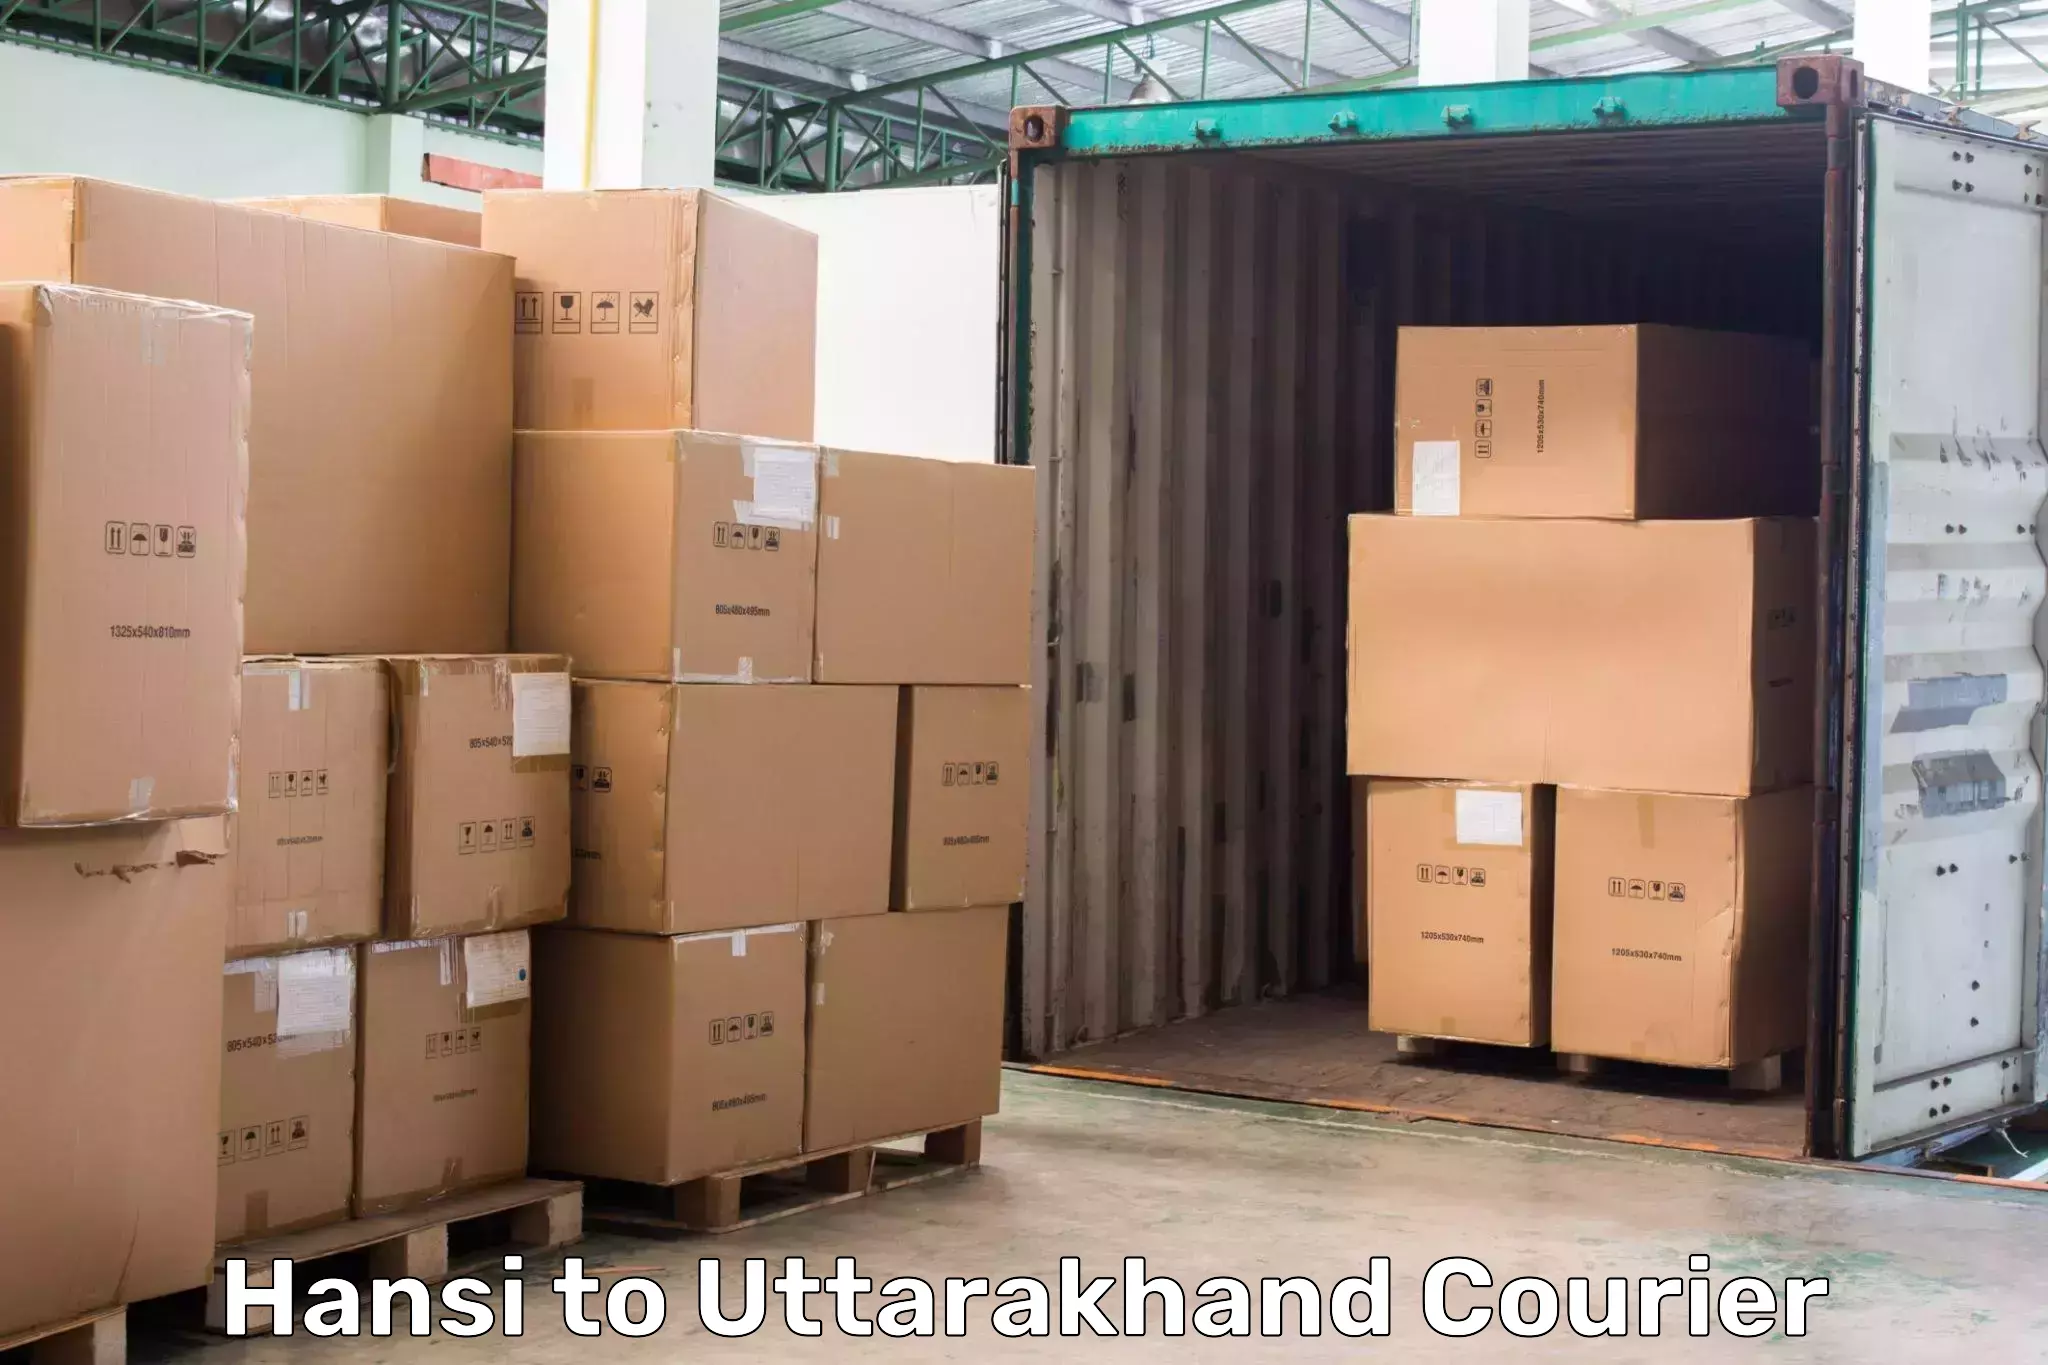 Full-service courier options Hansi to Uttarakhand